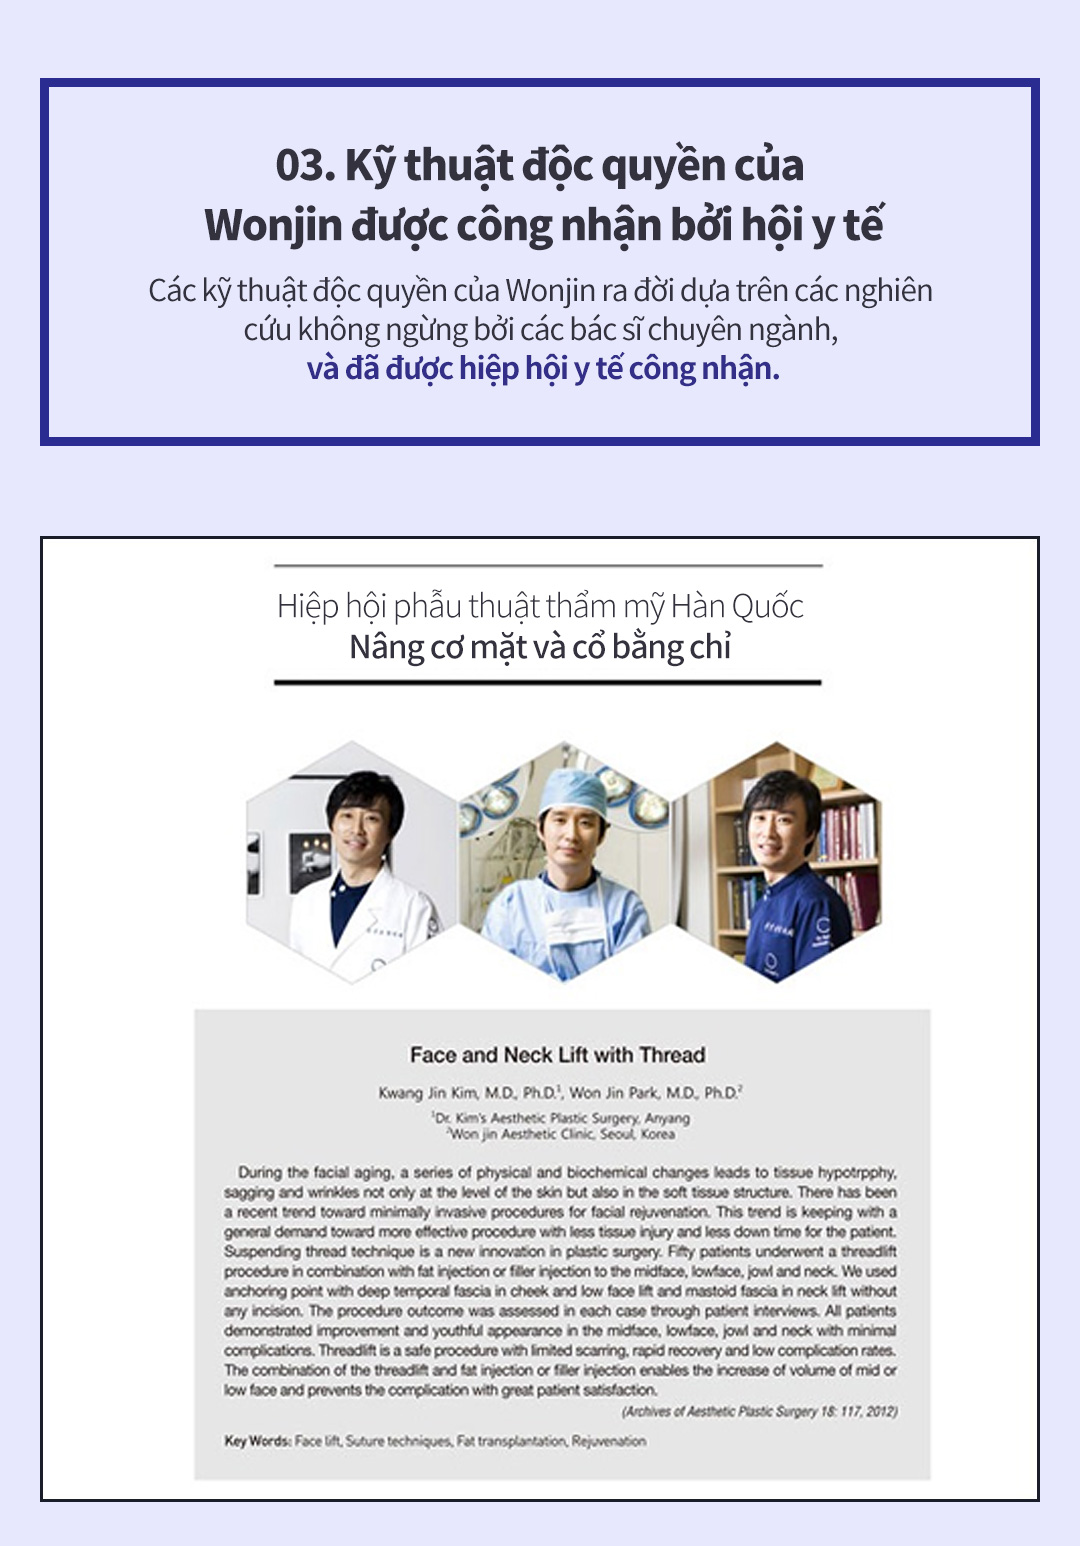 03. Kỹ thuật độc quyền của Wonjin được công nhận bởi hội y tế- Các kỹ thuật độc quyền của Wonjin ra đời dựa trên các nghiên cứu không ngừng bởi các bác sĩ chuyên ngành, và đã được hiệp hội y tế công nhận.